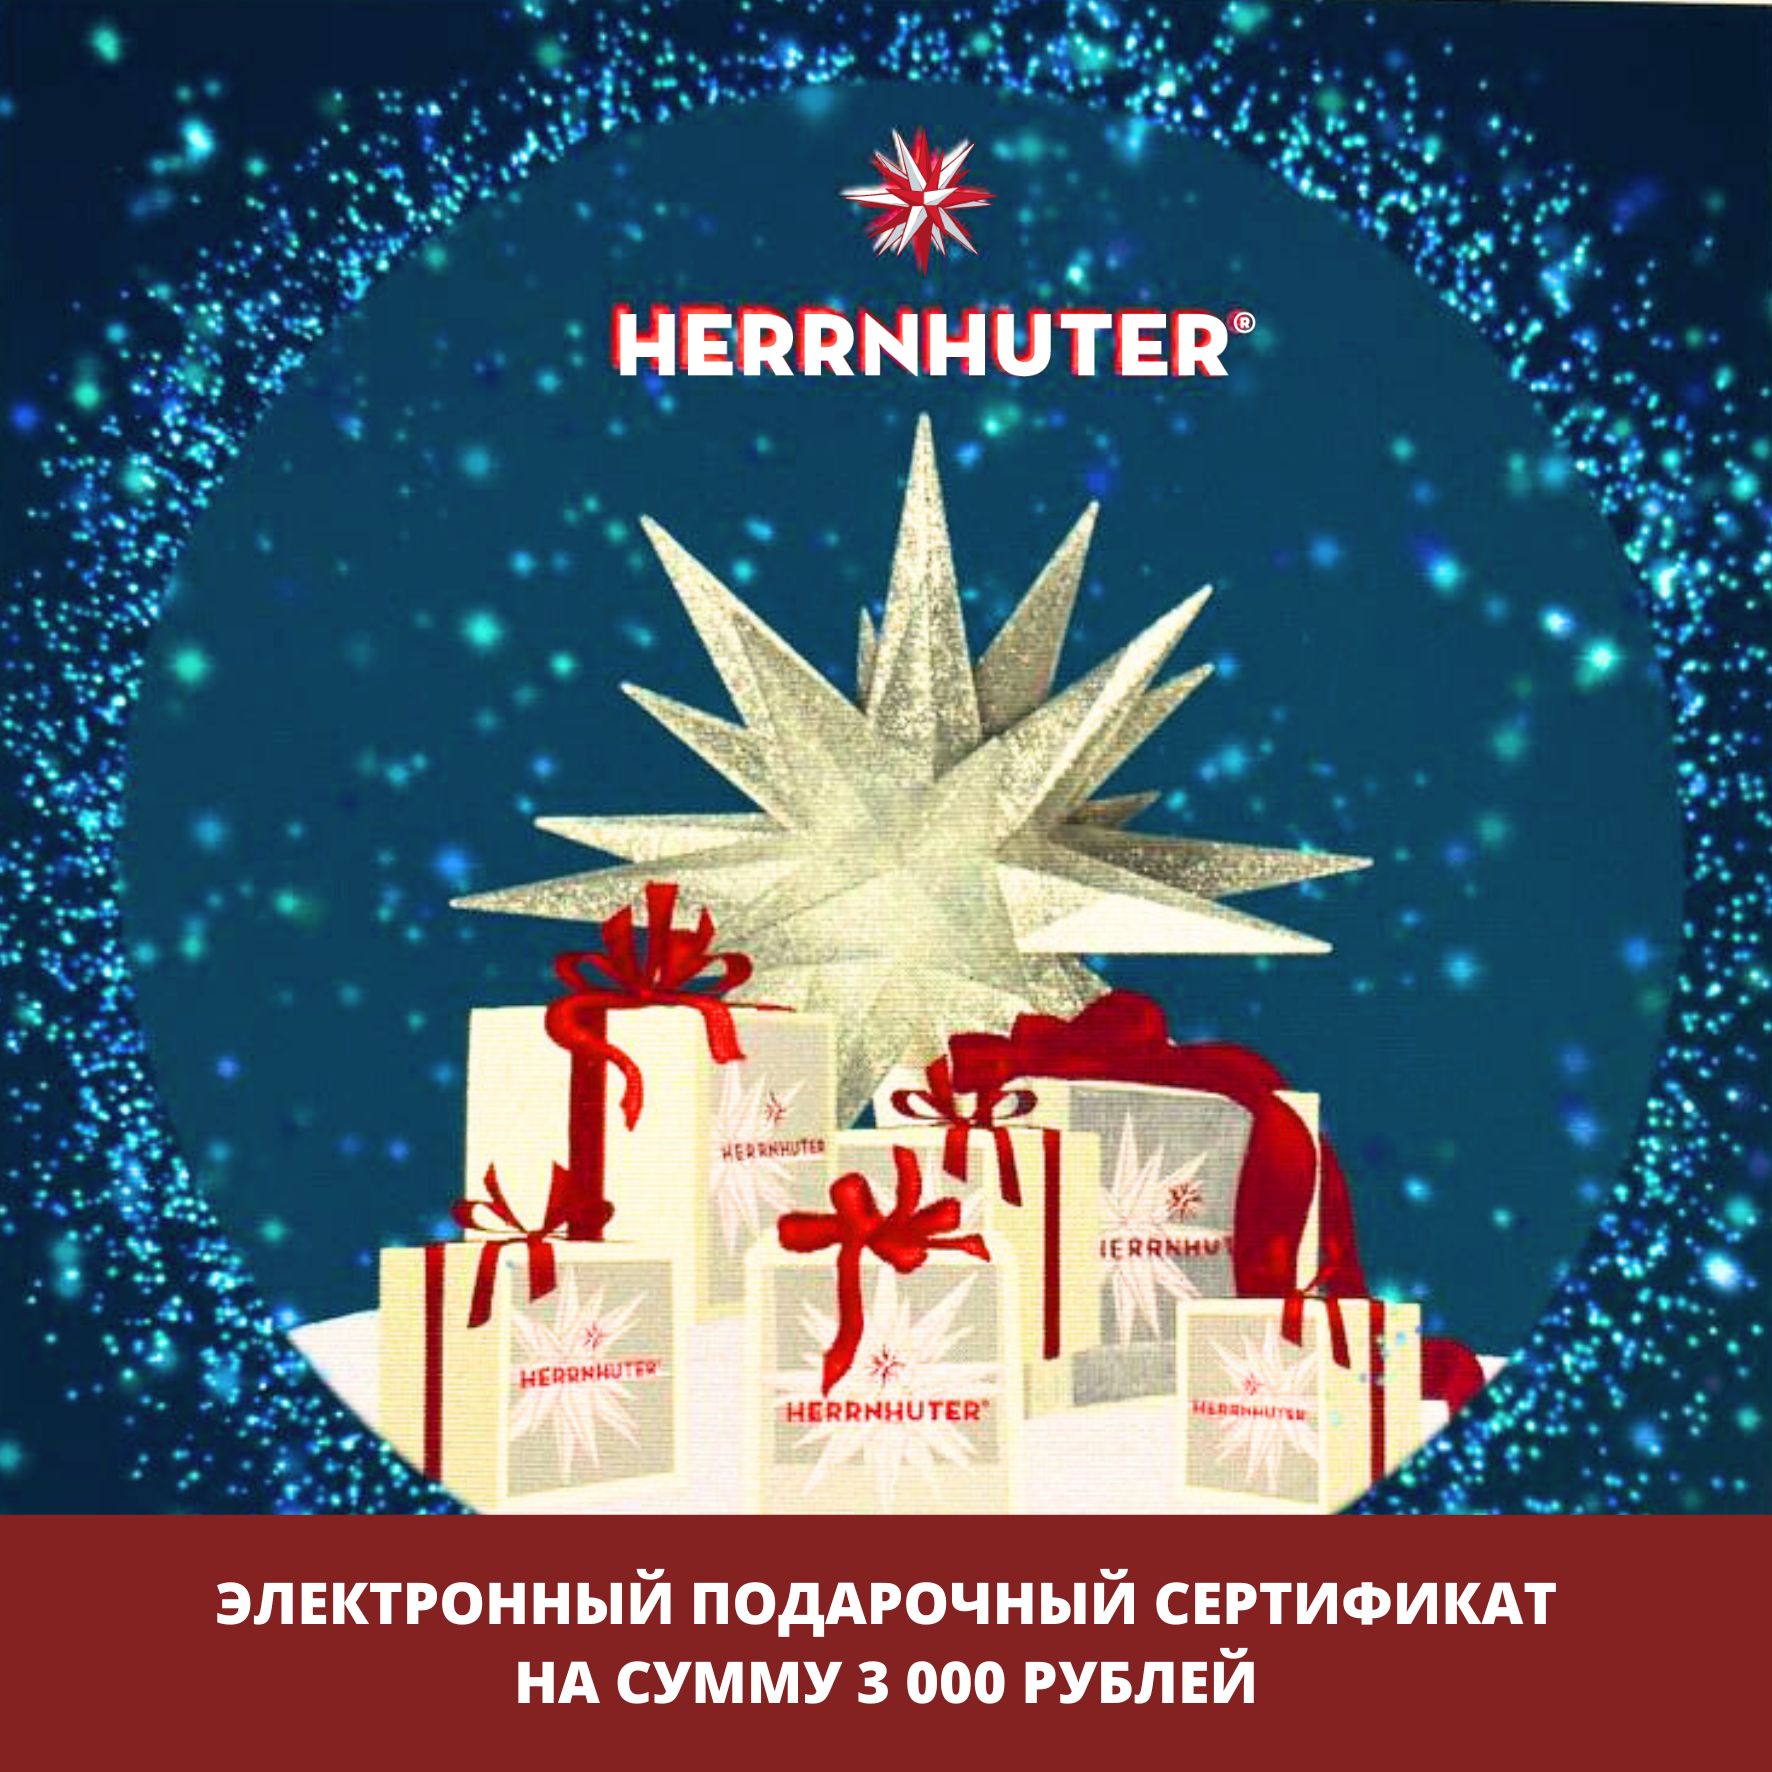 Электронный подарочный сертификат 3000 руб